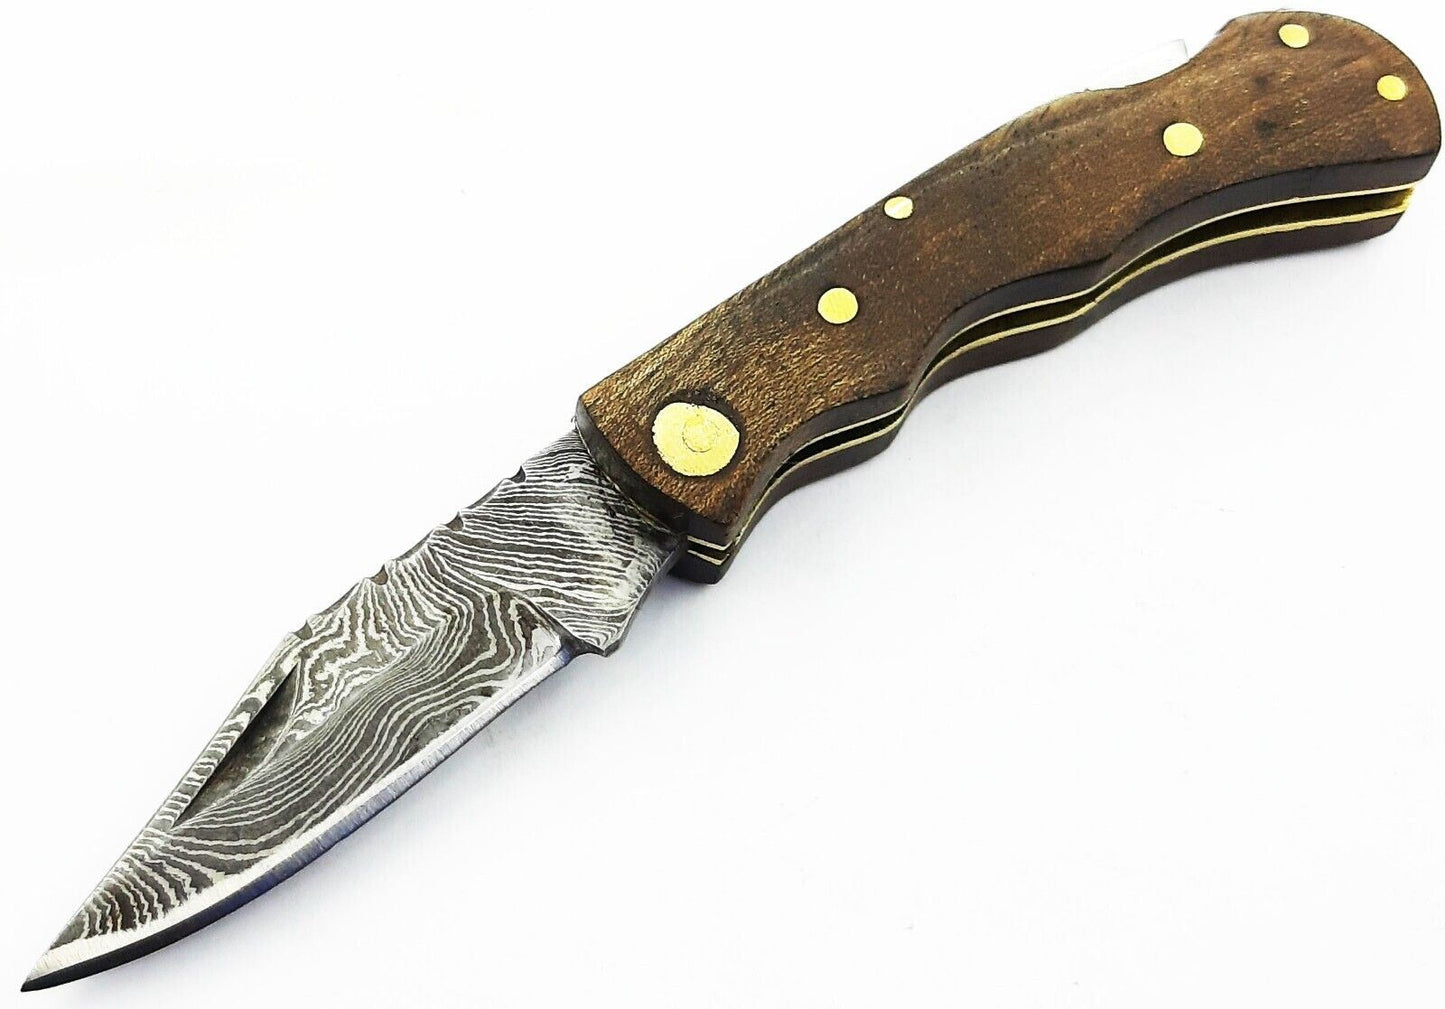 SHARDBLADE HAND FORGED Damascus Steel Lock back Folding Pocket Knife with Sheath